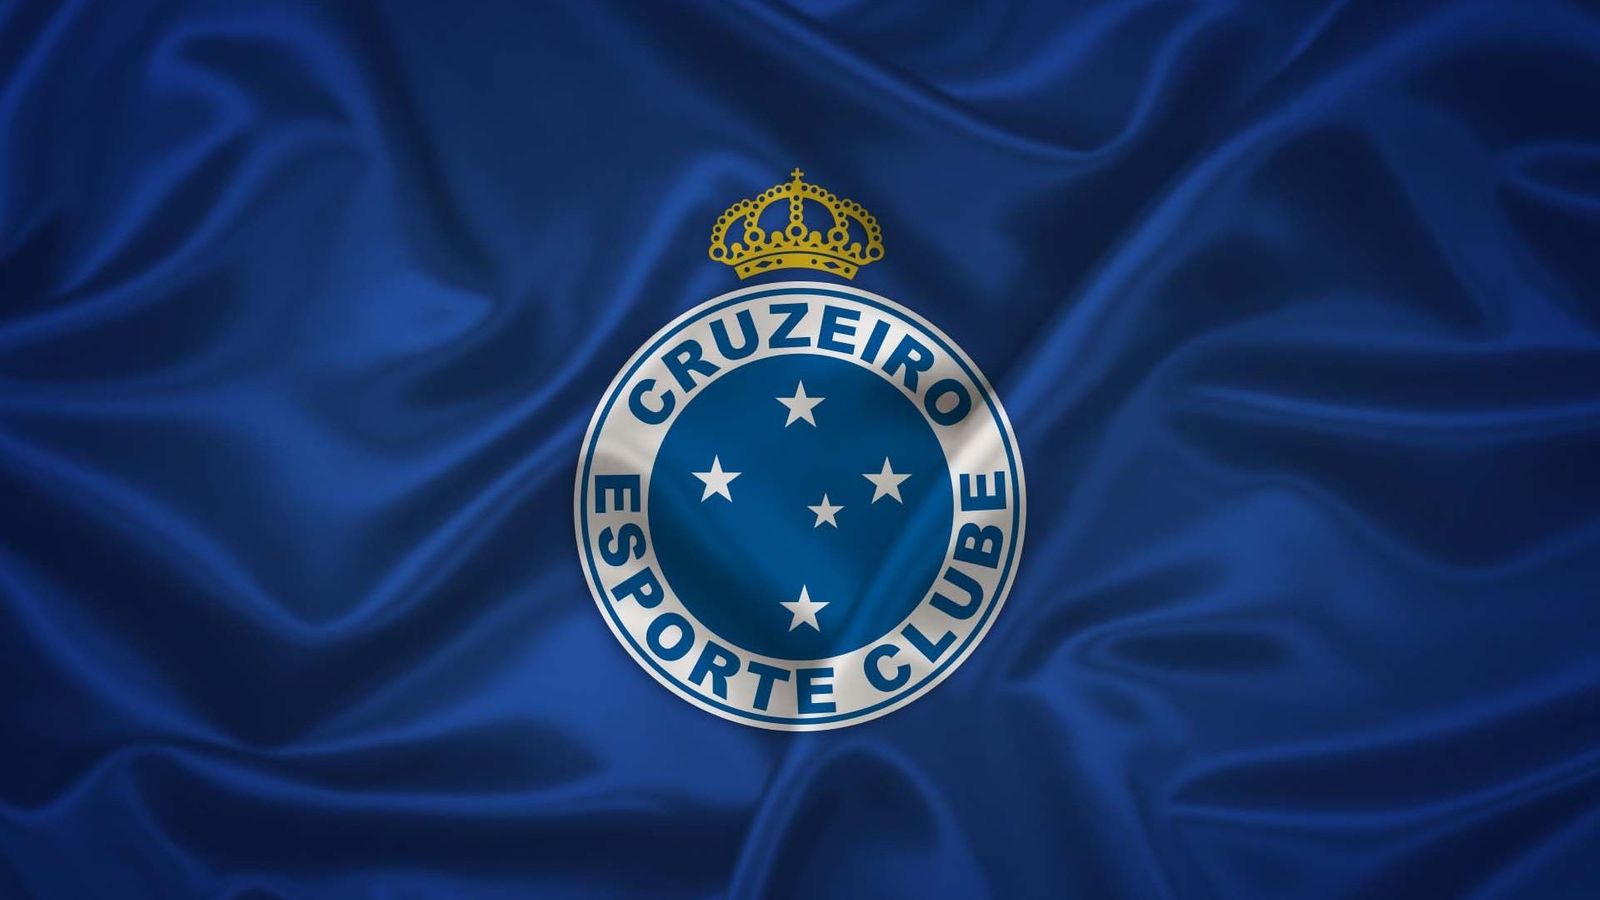 Cruzeiro Esporte Clube Football League Logo Wallpaper